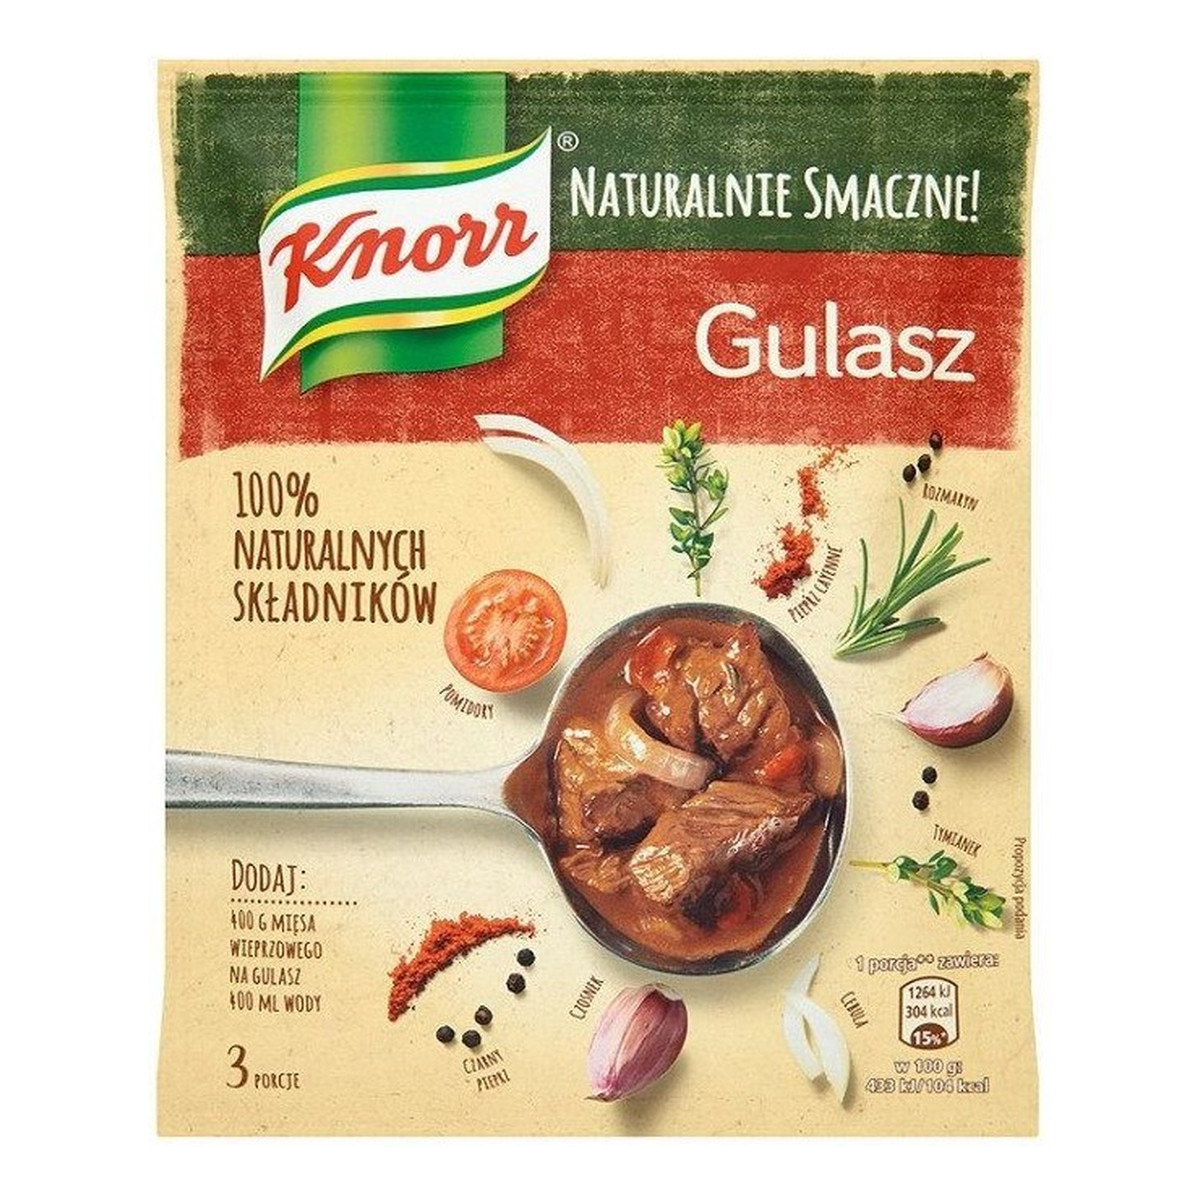 Knorr Naturalnie Smaczne! gulasz 63g